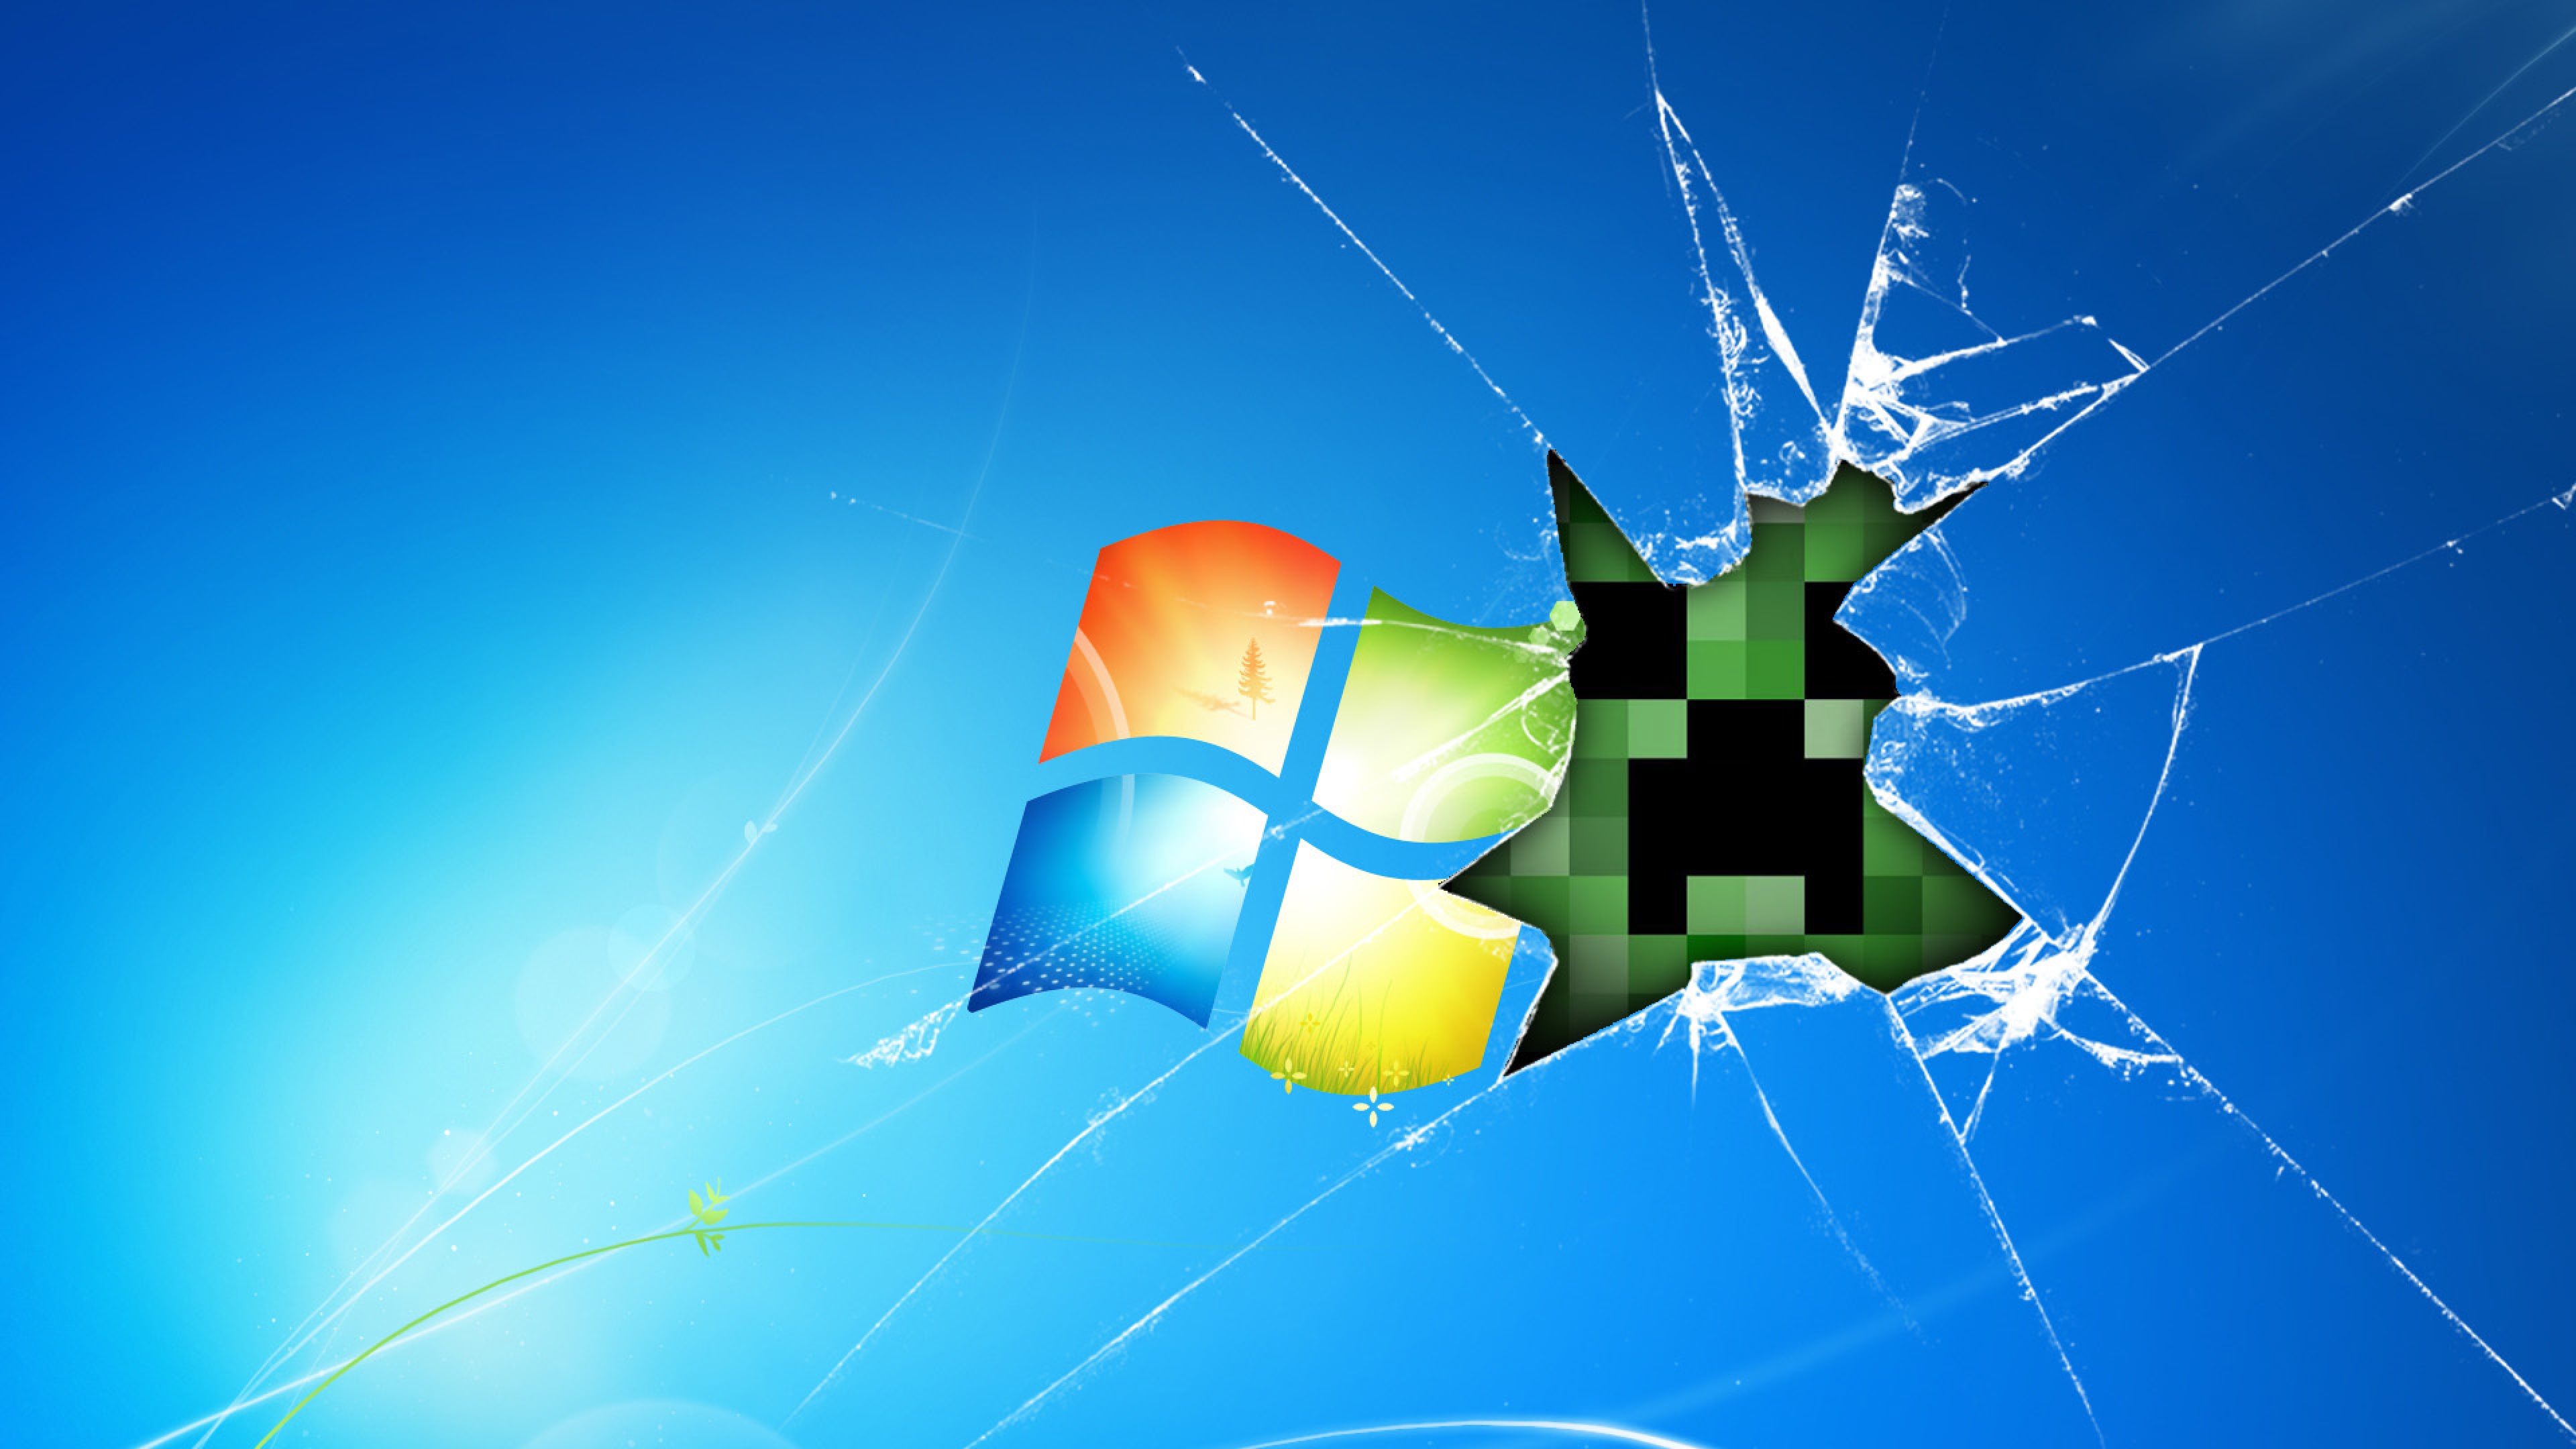 Hình nền desktop Windows Minecraft Glass sẽ mang đến cho bạn sự tinh tế và sang trọng trong phòng làm việc của bạn. Với phong cách độc đáo và hiện đại, hình nền này sẽ mang lại cho bạn những trải nghiệm làm việc tốt nhất.